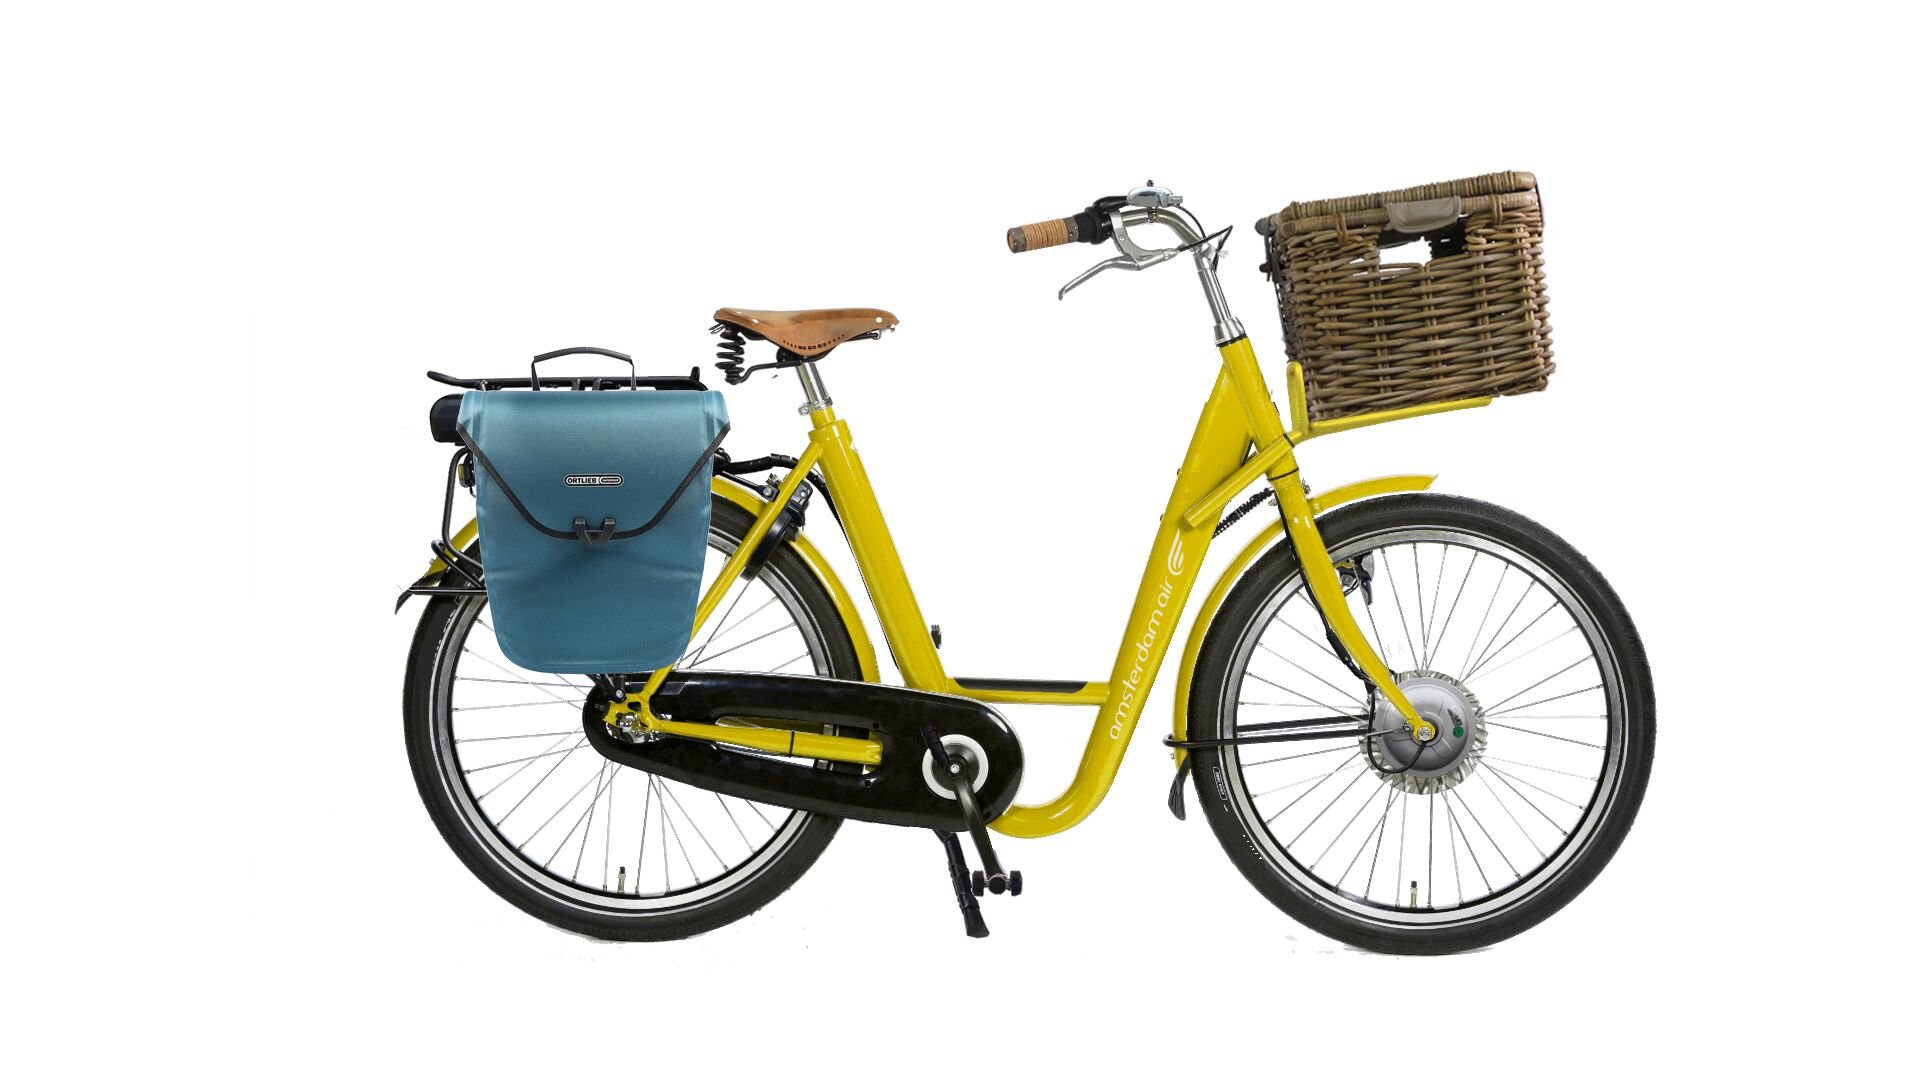 Docker Premium électrique avec cadre jaune, malle sur porte-bagage pick-up et sacoche sur le porte-bagage arière